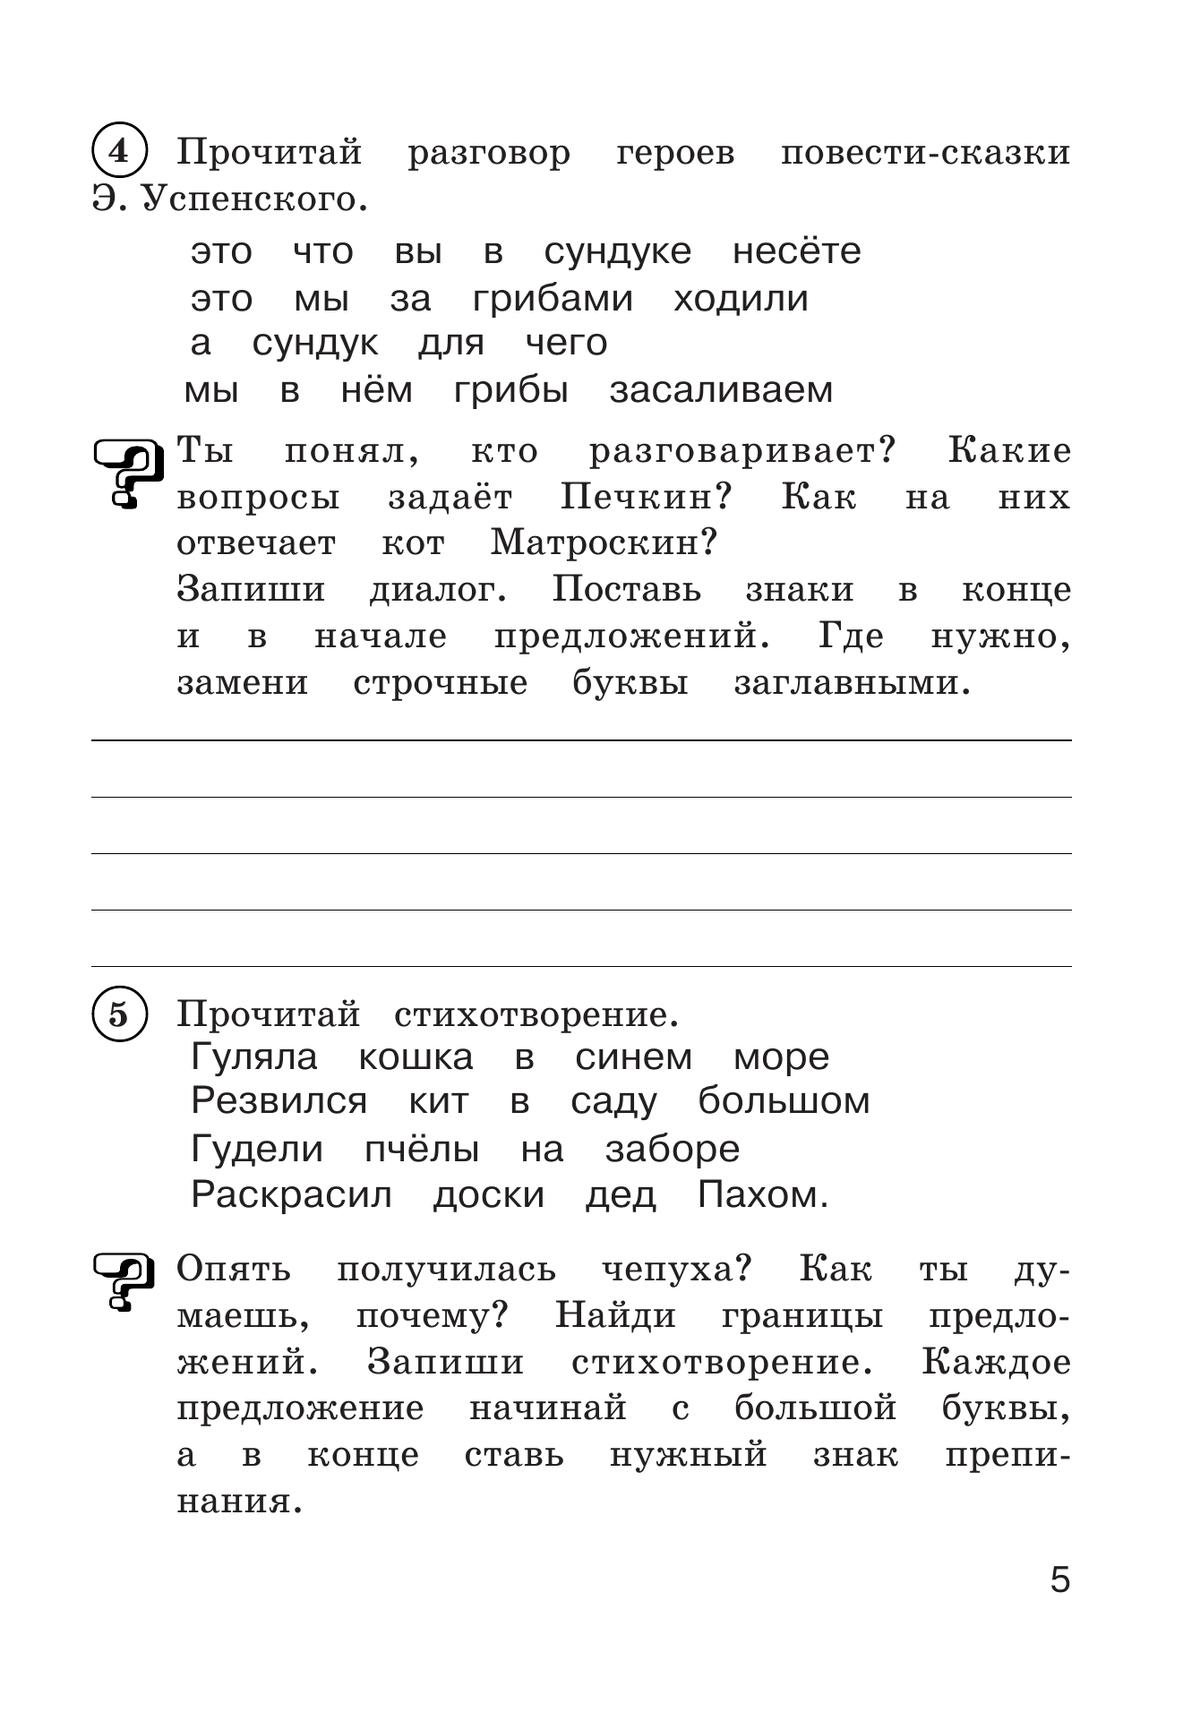 Рабочая тетрадь по русскому языку. 3 класс. В 2 частях. Часть 2 6